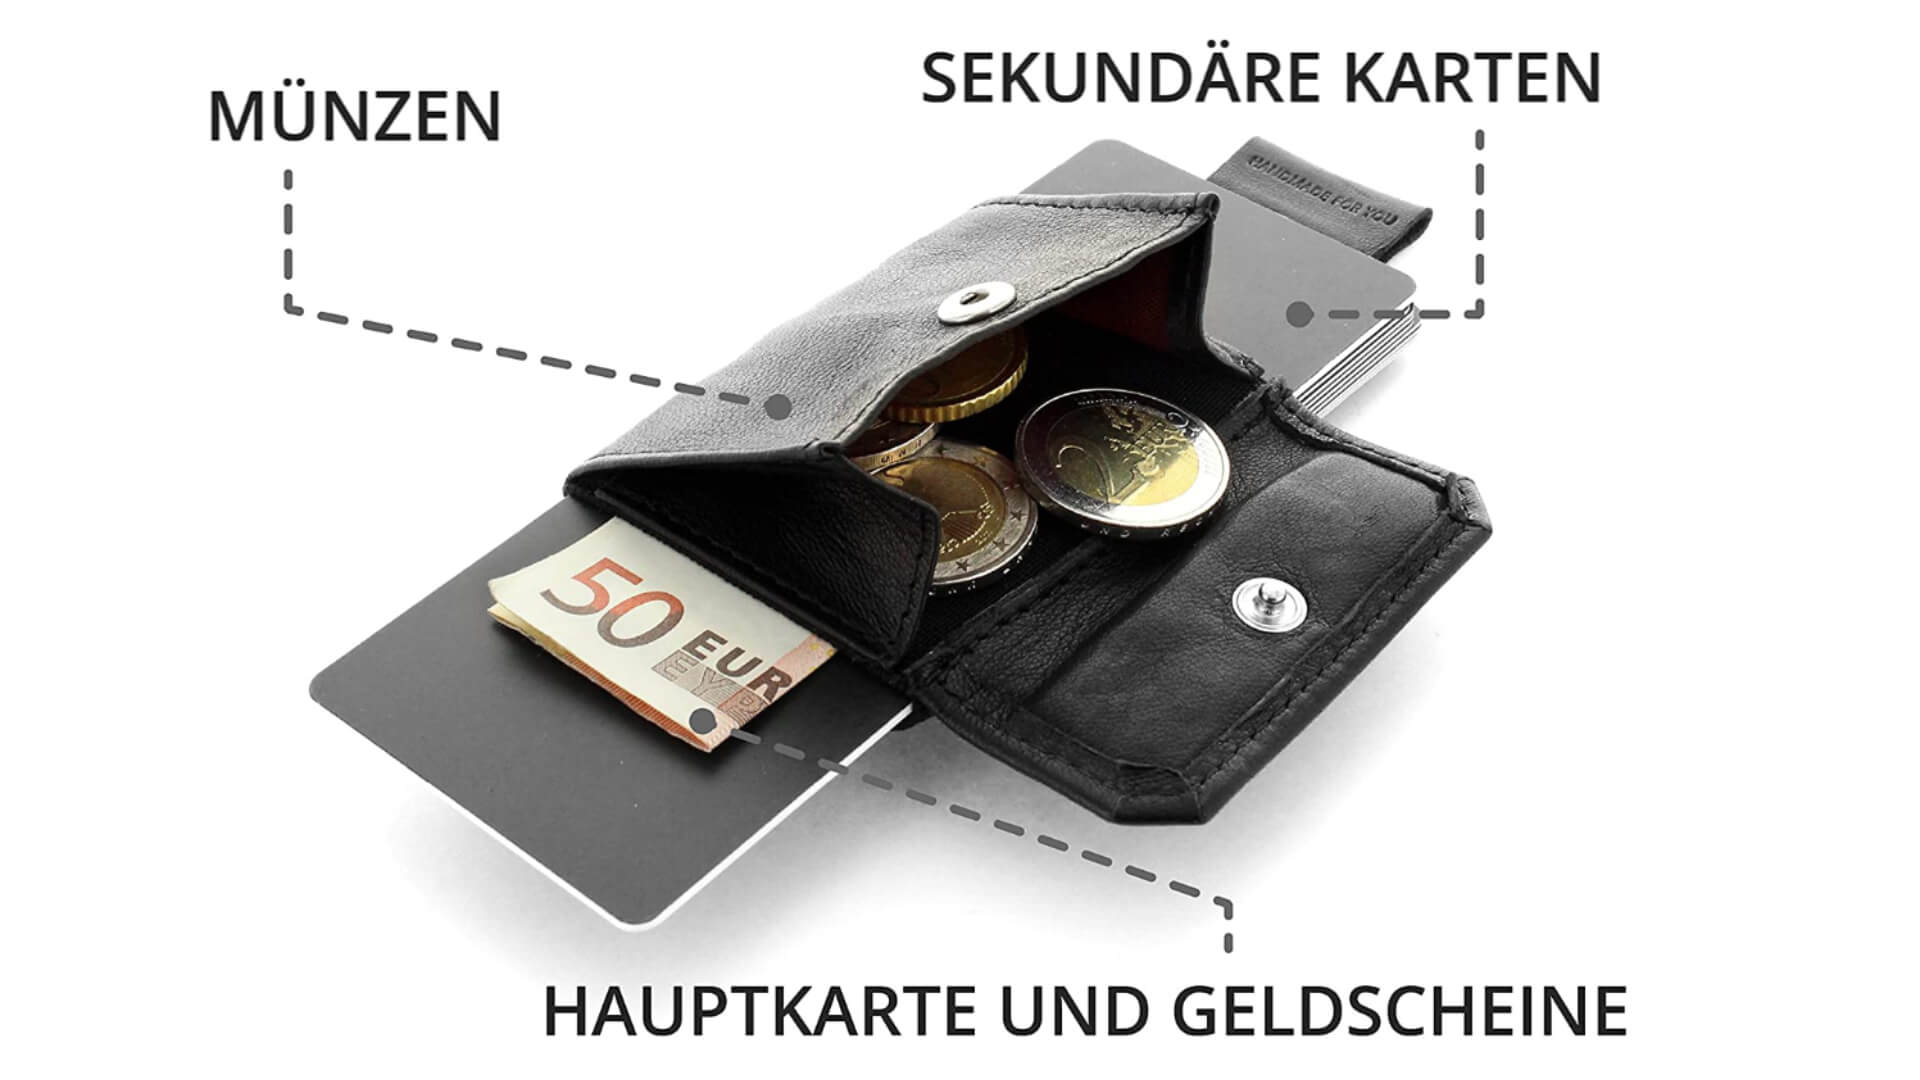 Hier wurde mitgedacht: Der Nano Boy Pocket bietet Platz für jede Menge Karten und sogar Bargeld.